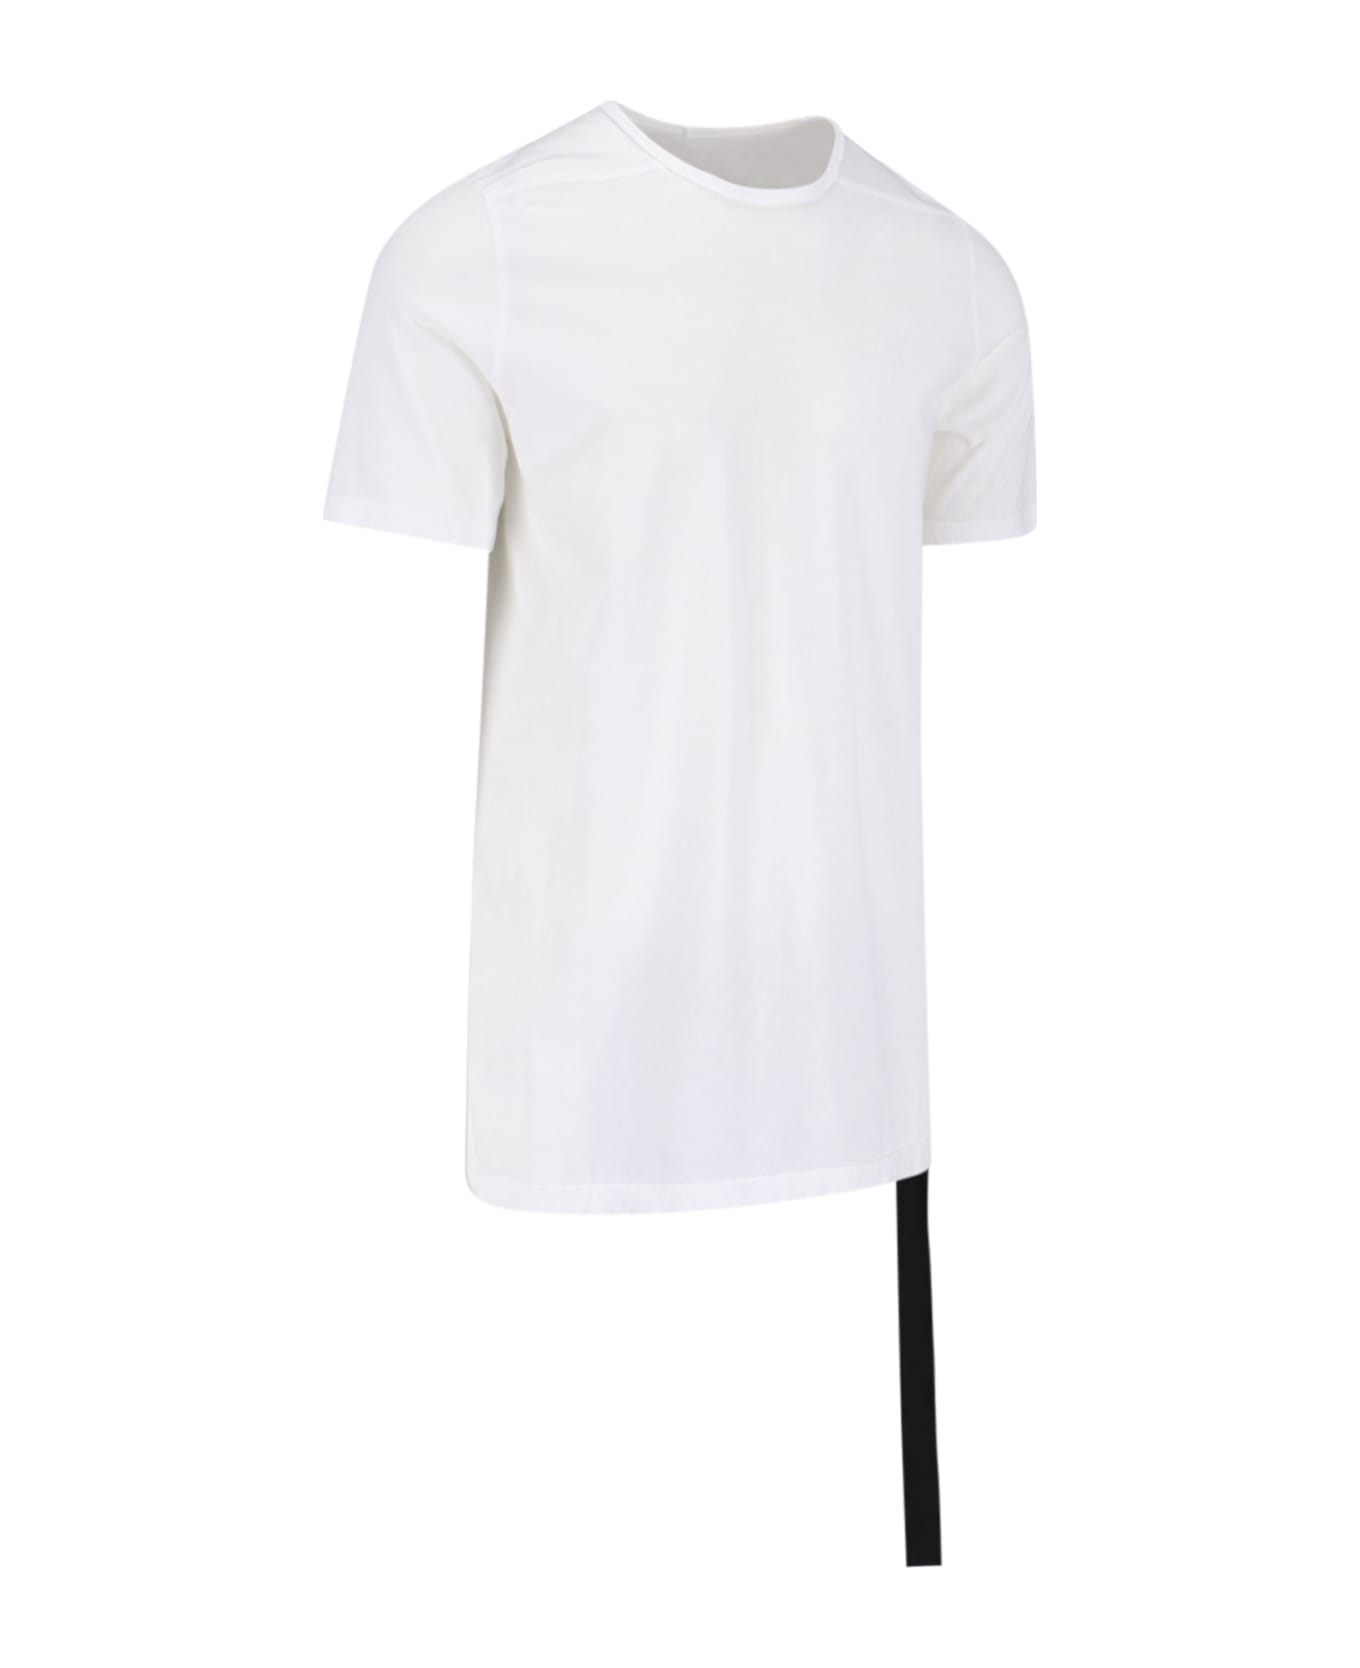 DRKSHDW "luxor Level" T-shirt - White